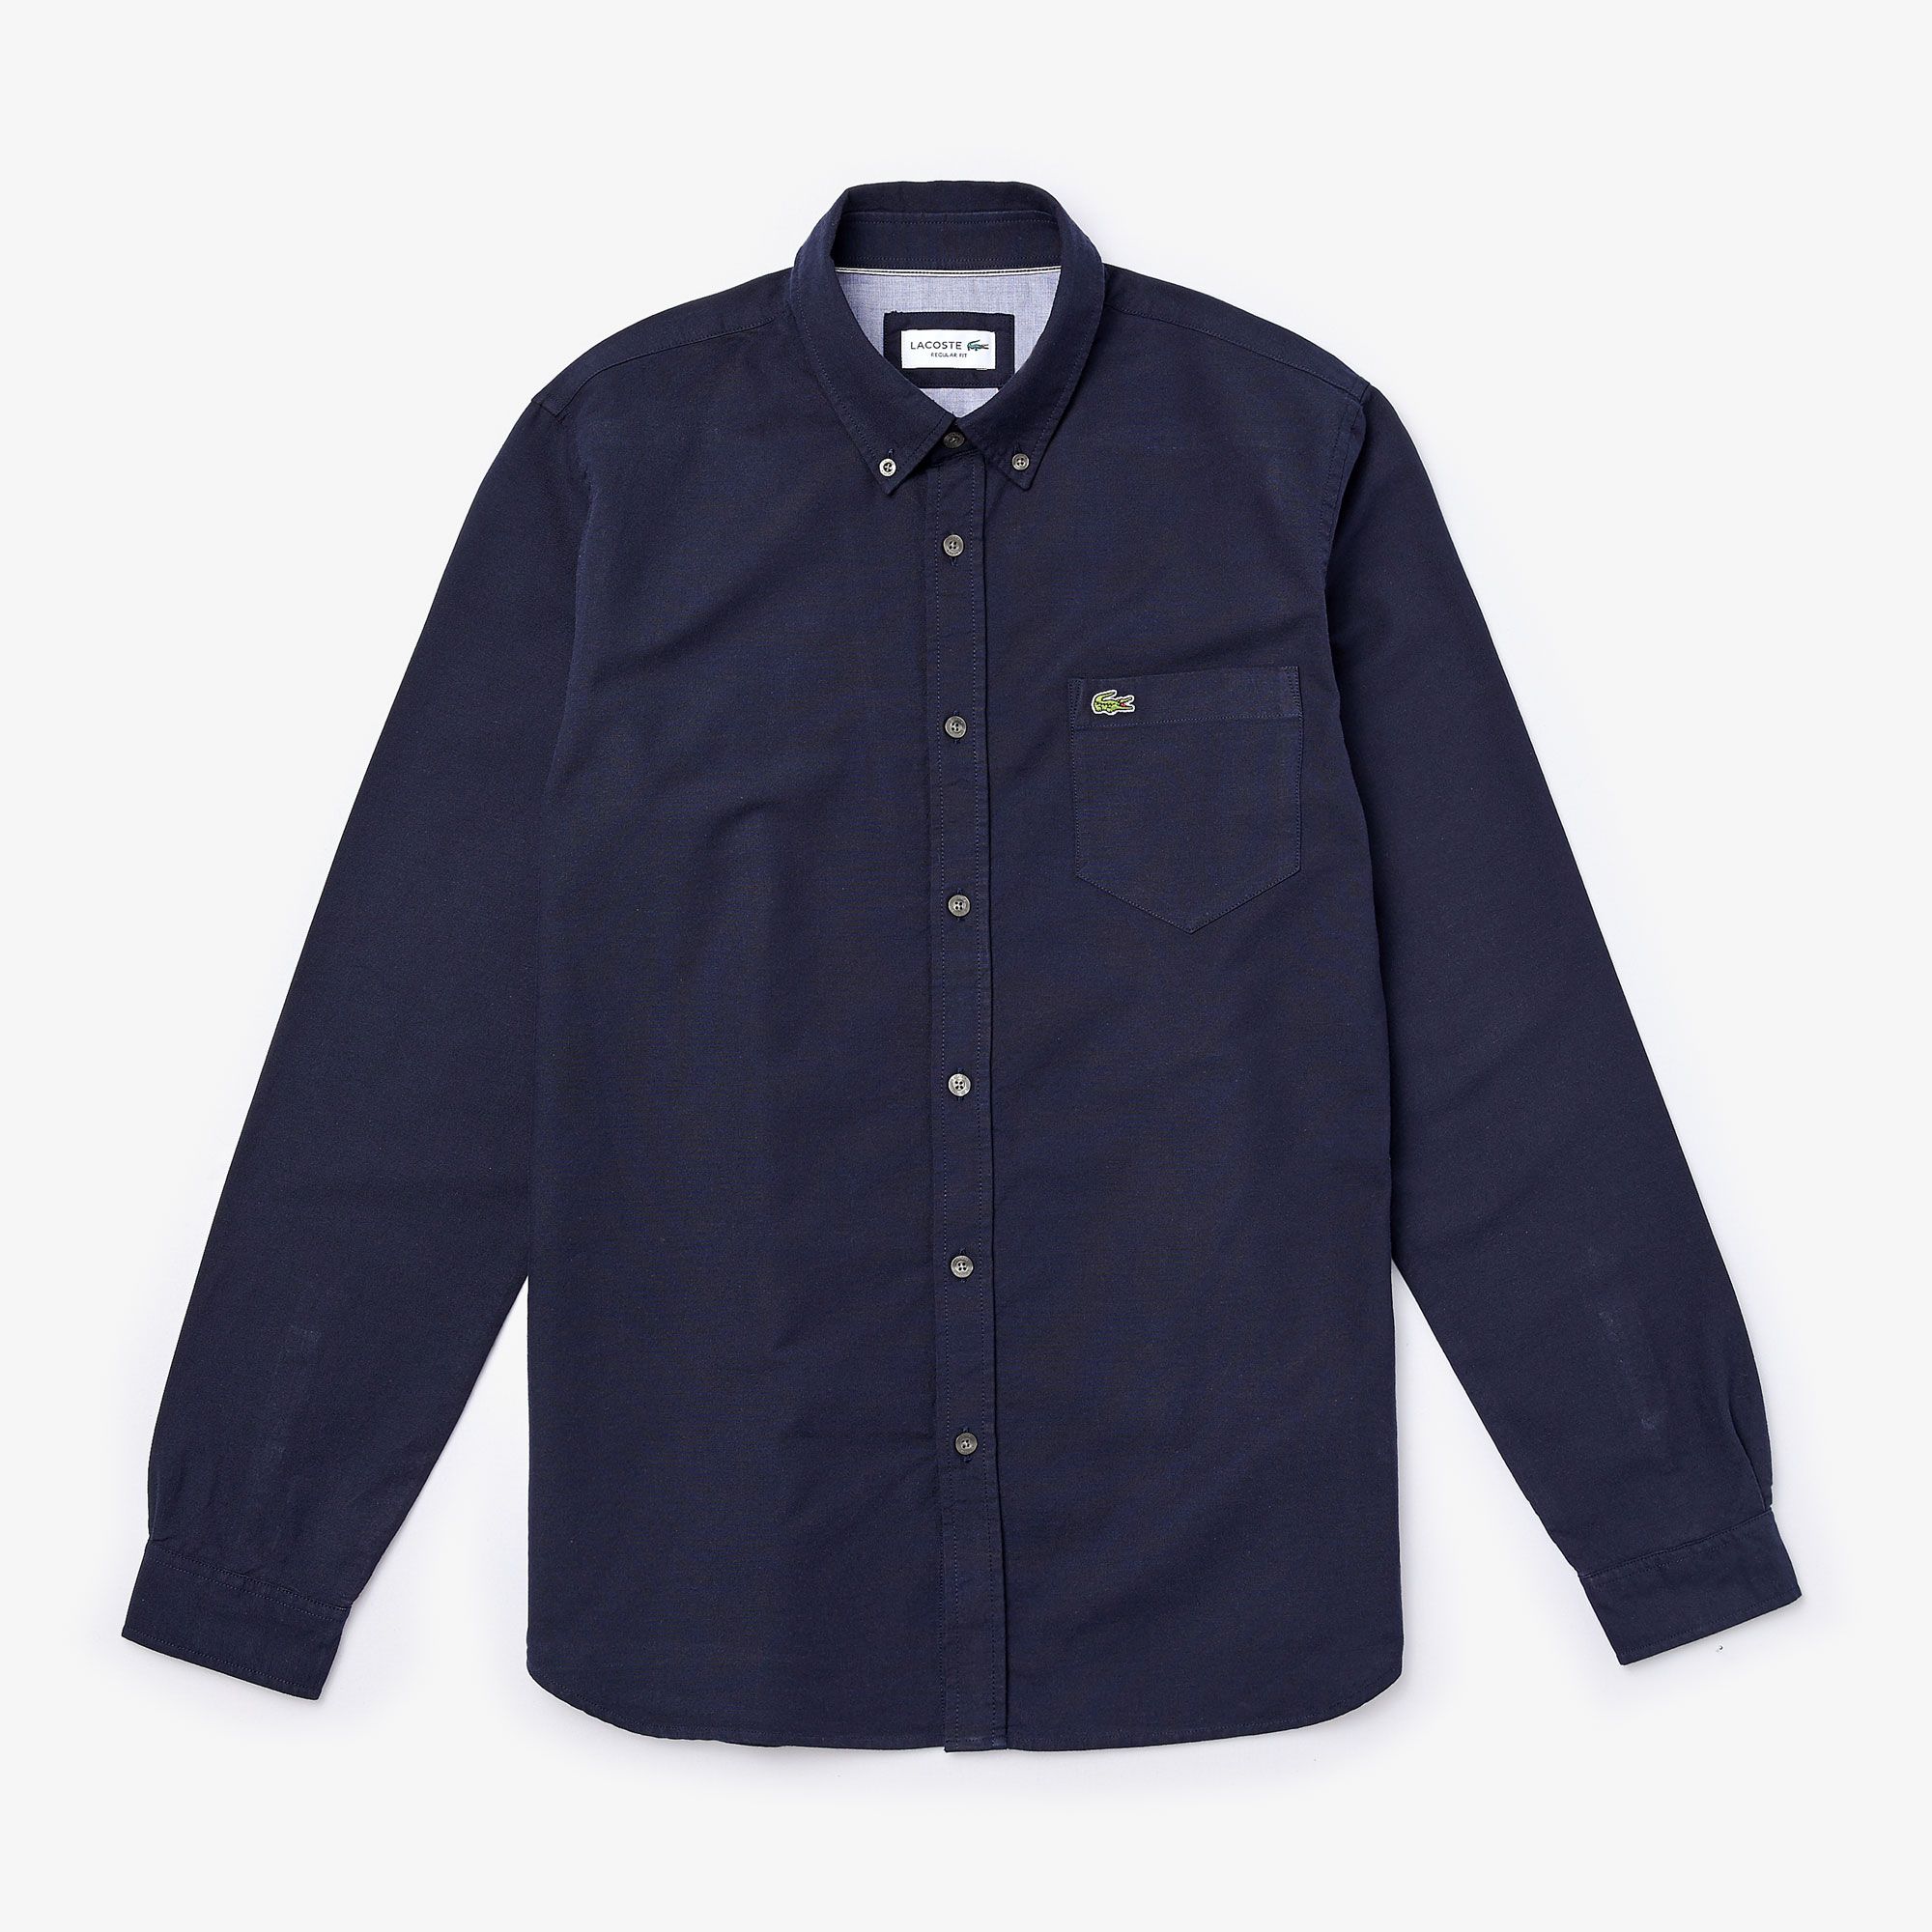  Lacoste Oxford Cotton Shirt - Dark Navy (Regular) 